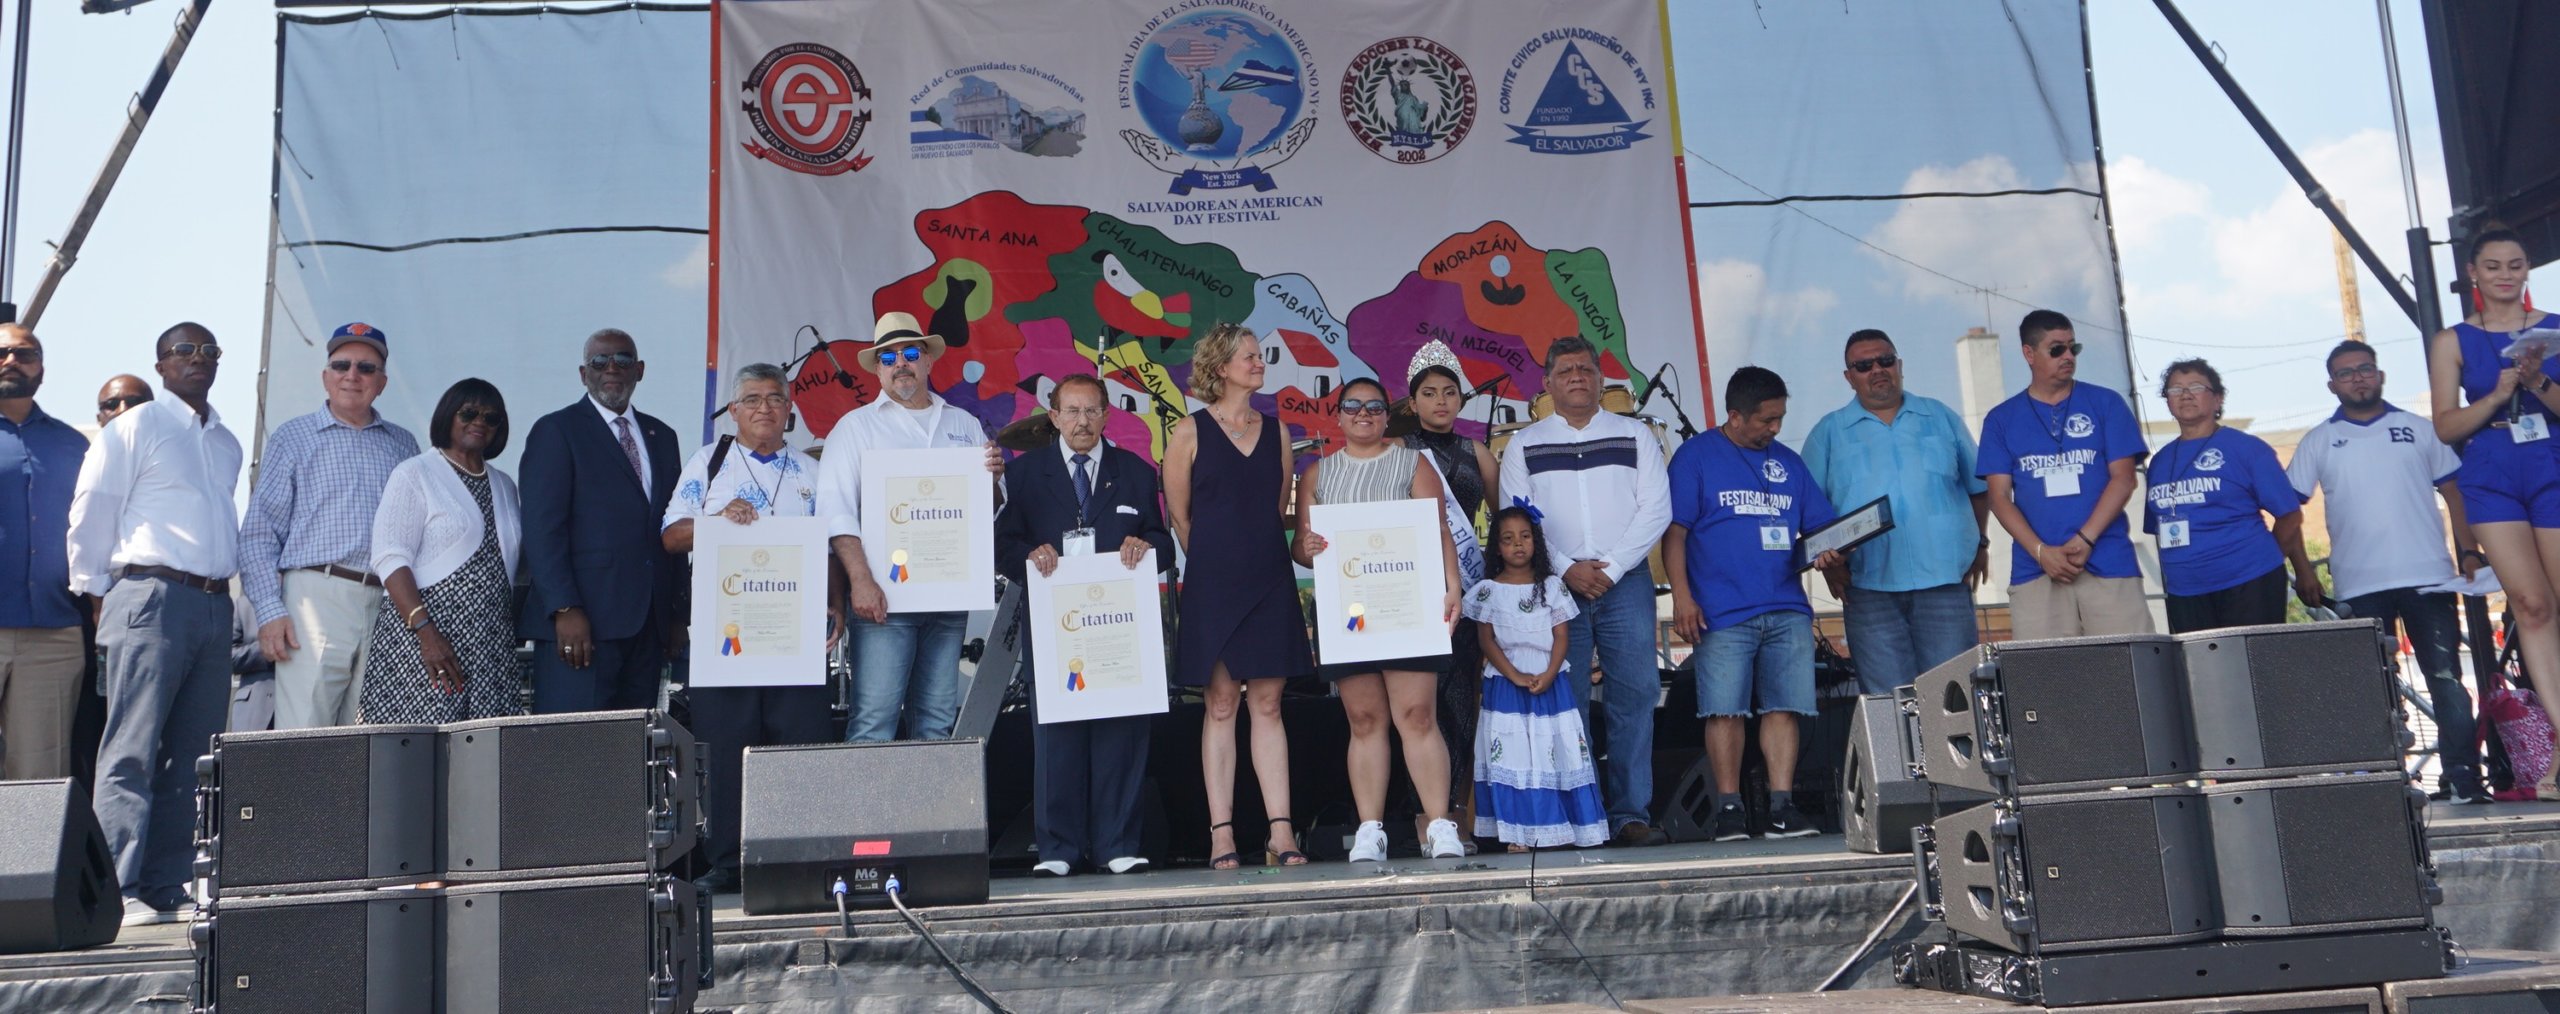 Long Island vibró con el festival Día de El Salvadoreño Americano (Fotos y Videos)